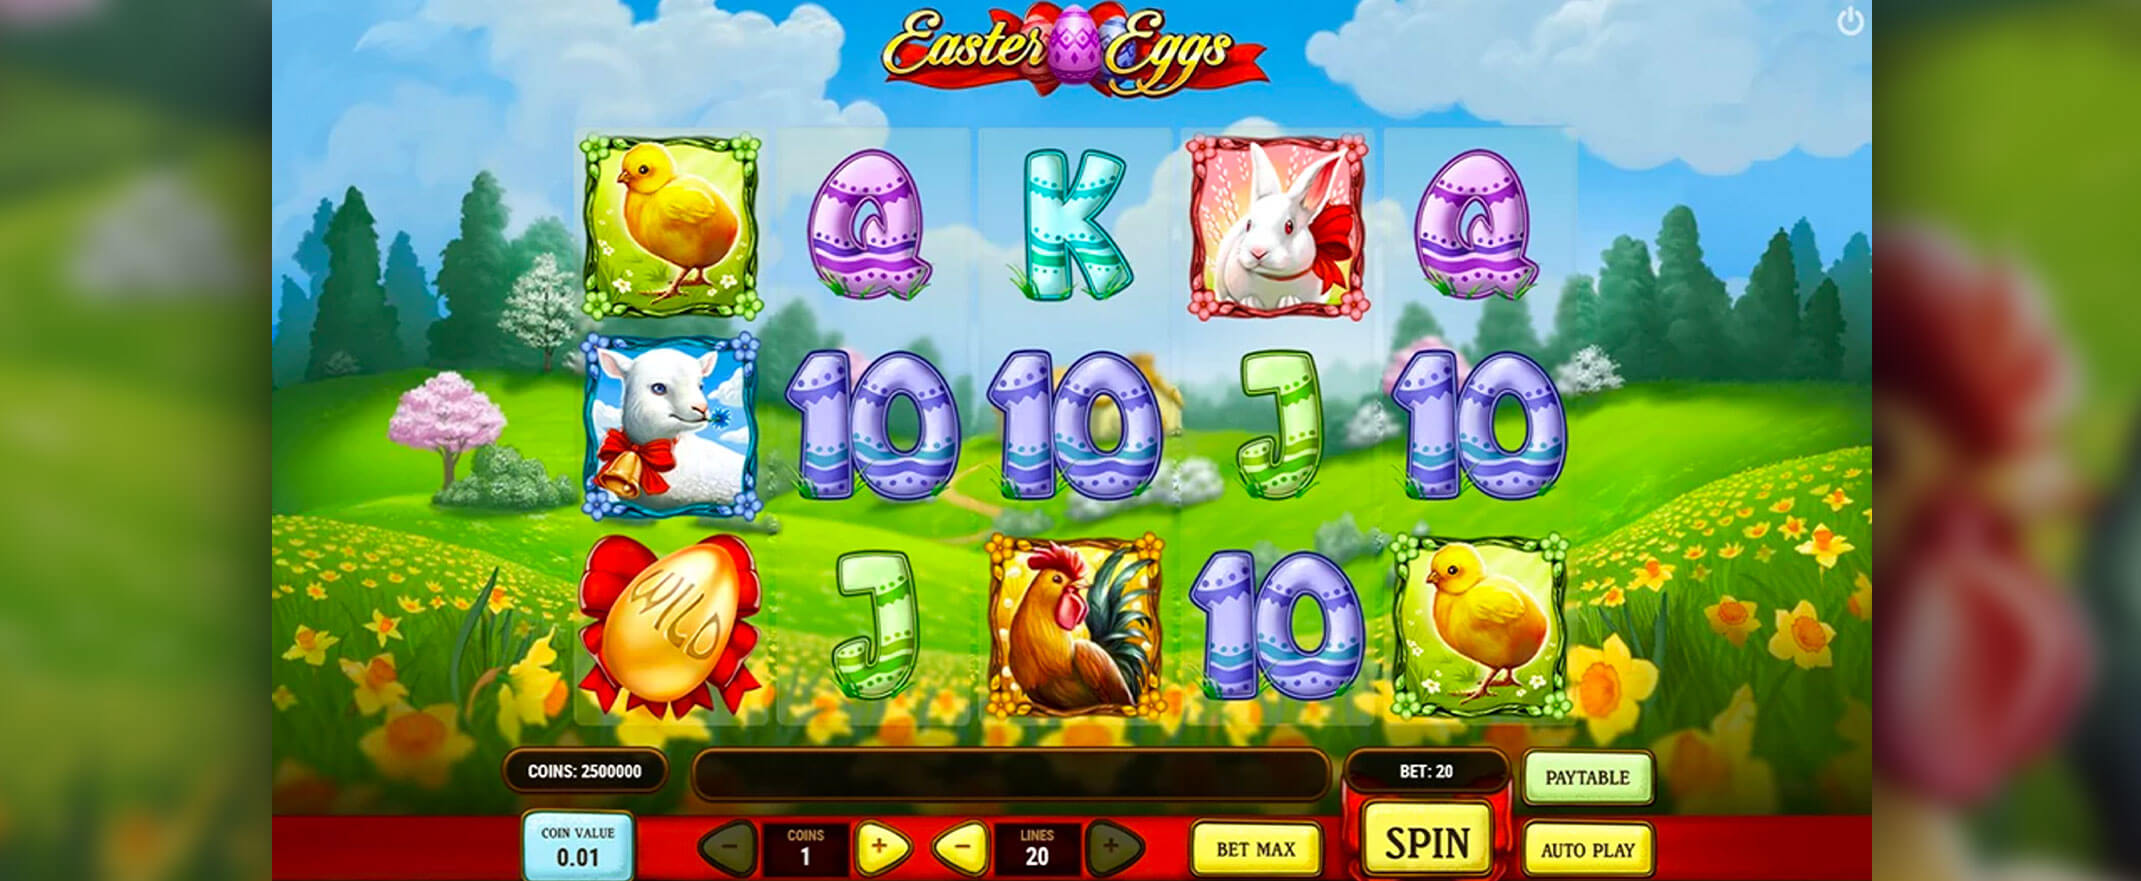 Easter Eggs spielautomat